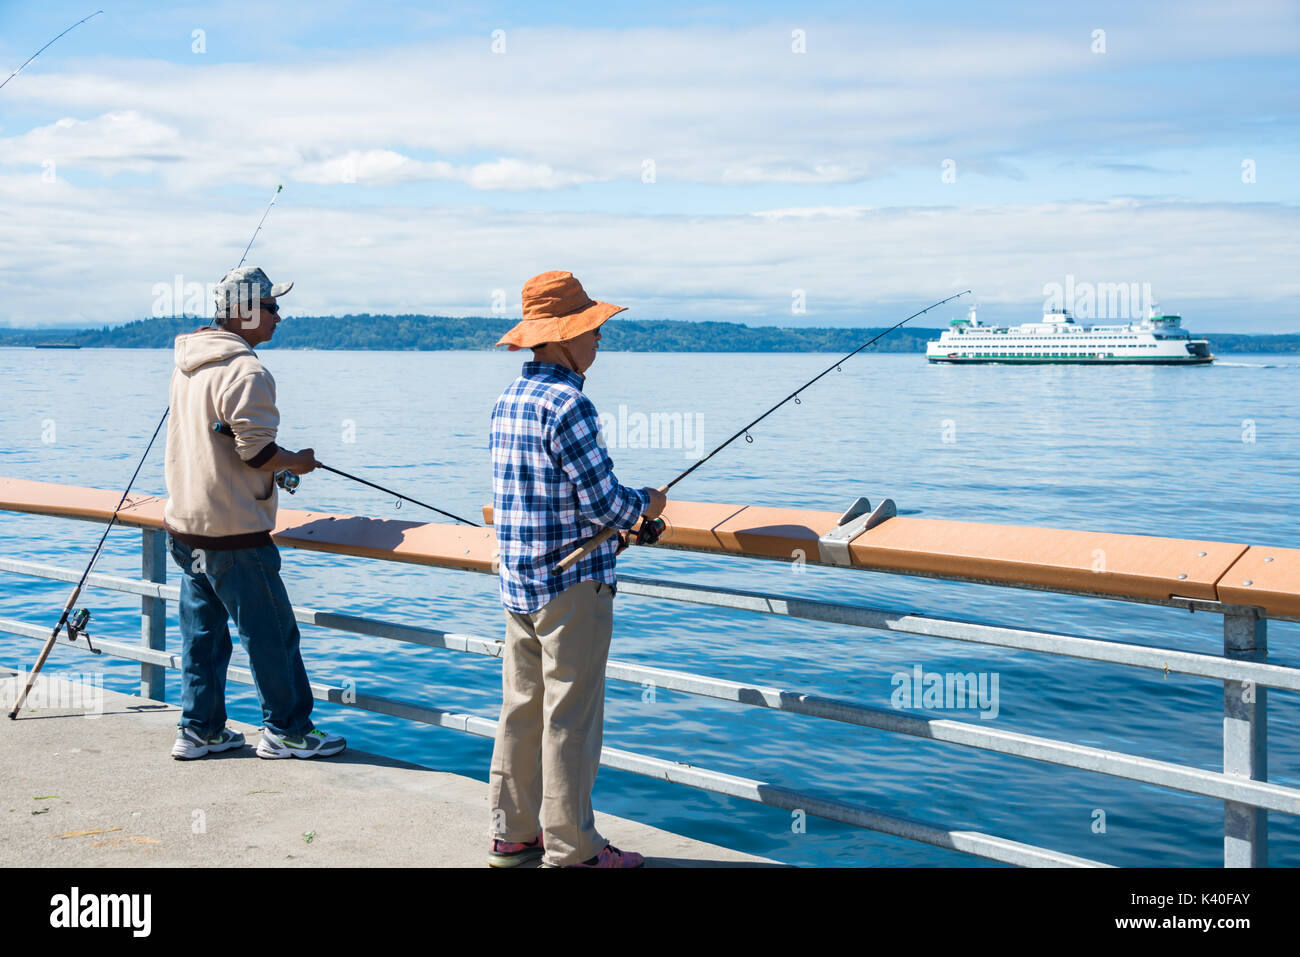 Mari et femme sur la jetée de pêche avec Washington State Ferry en arrière-plan Banque D'Images